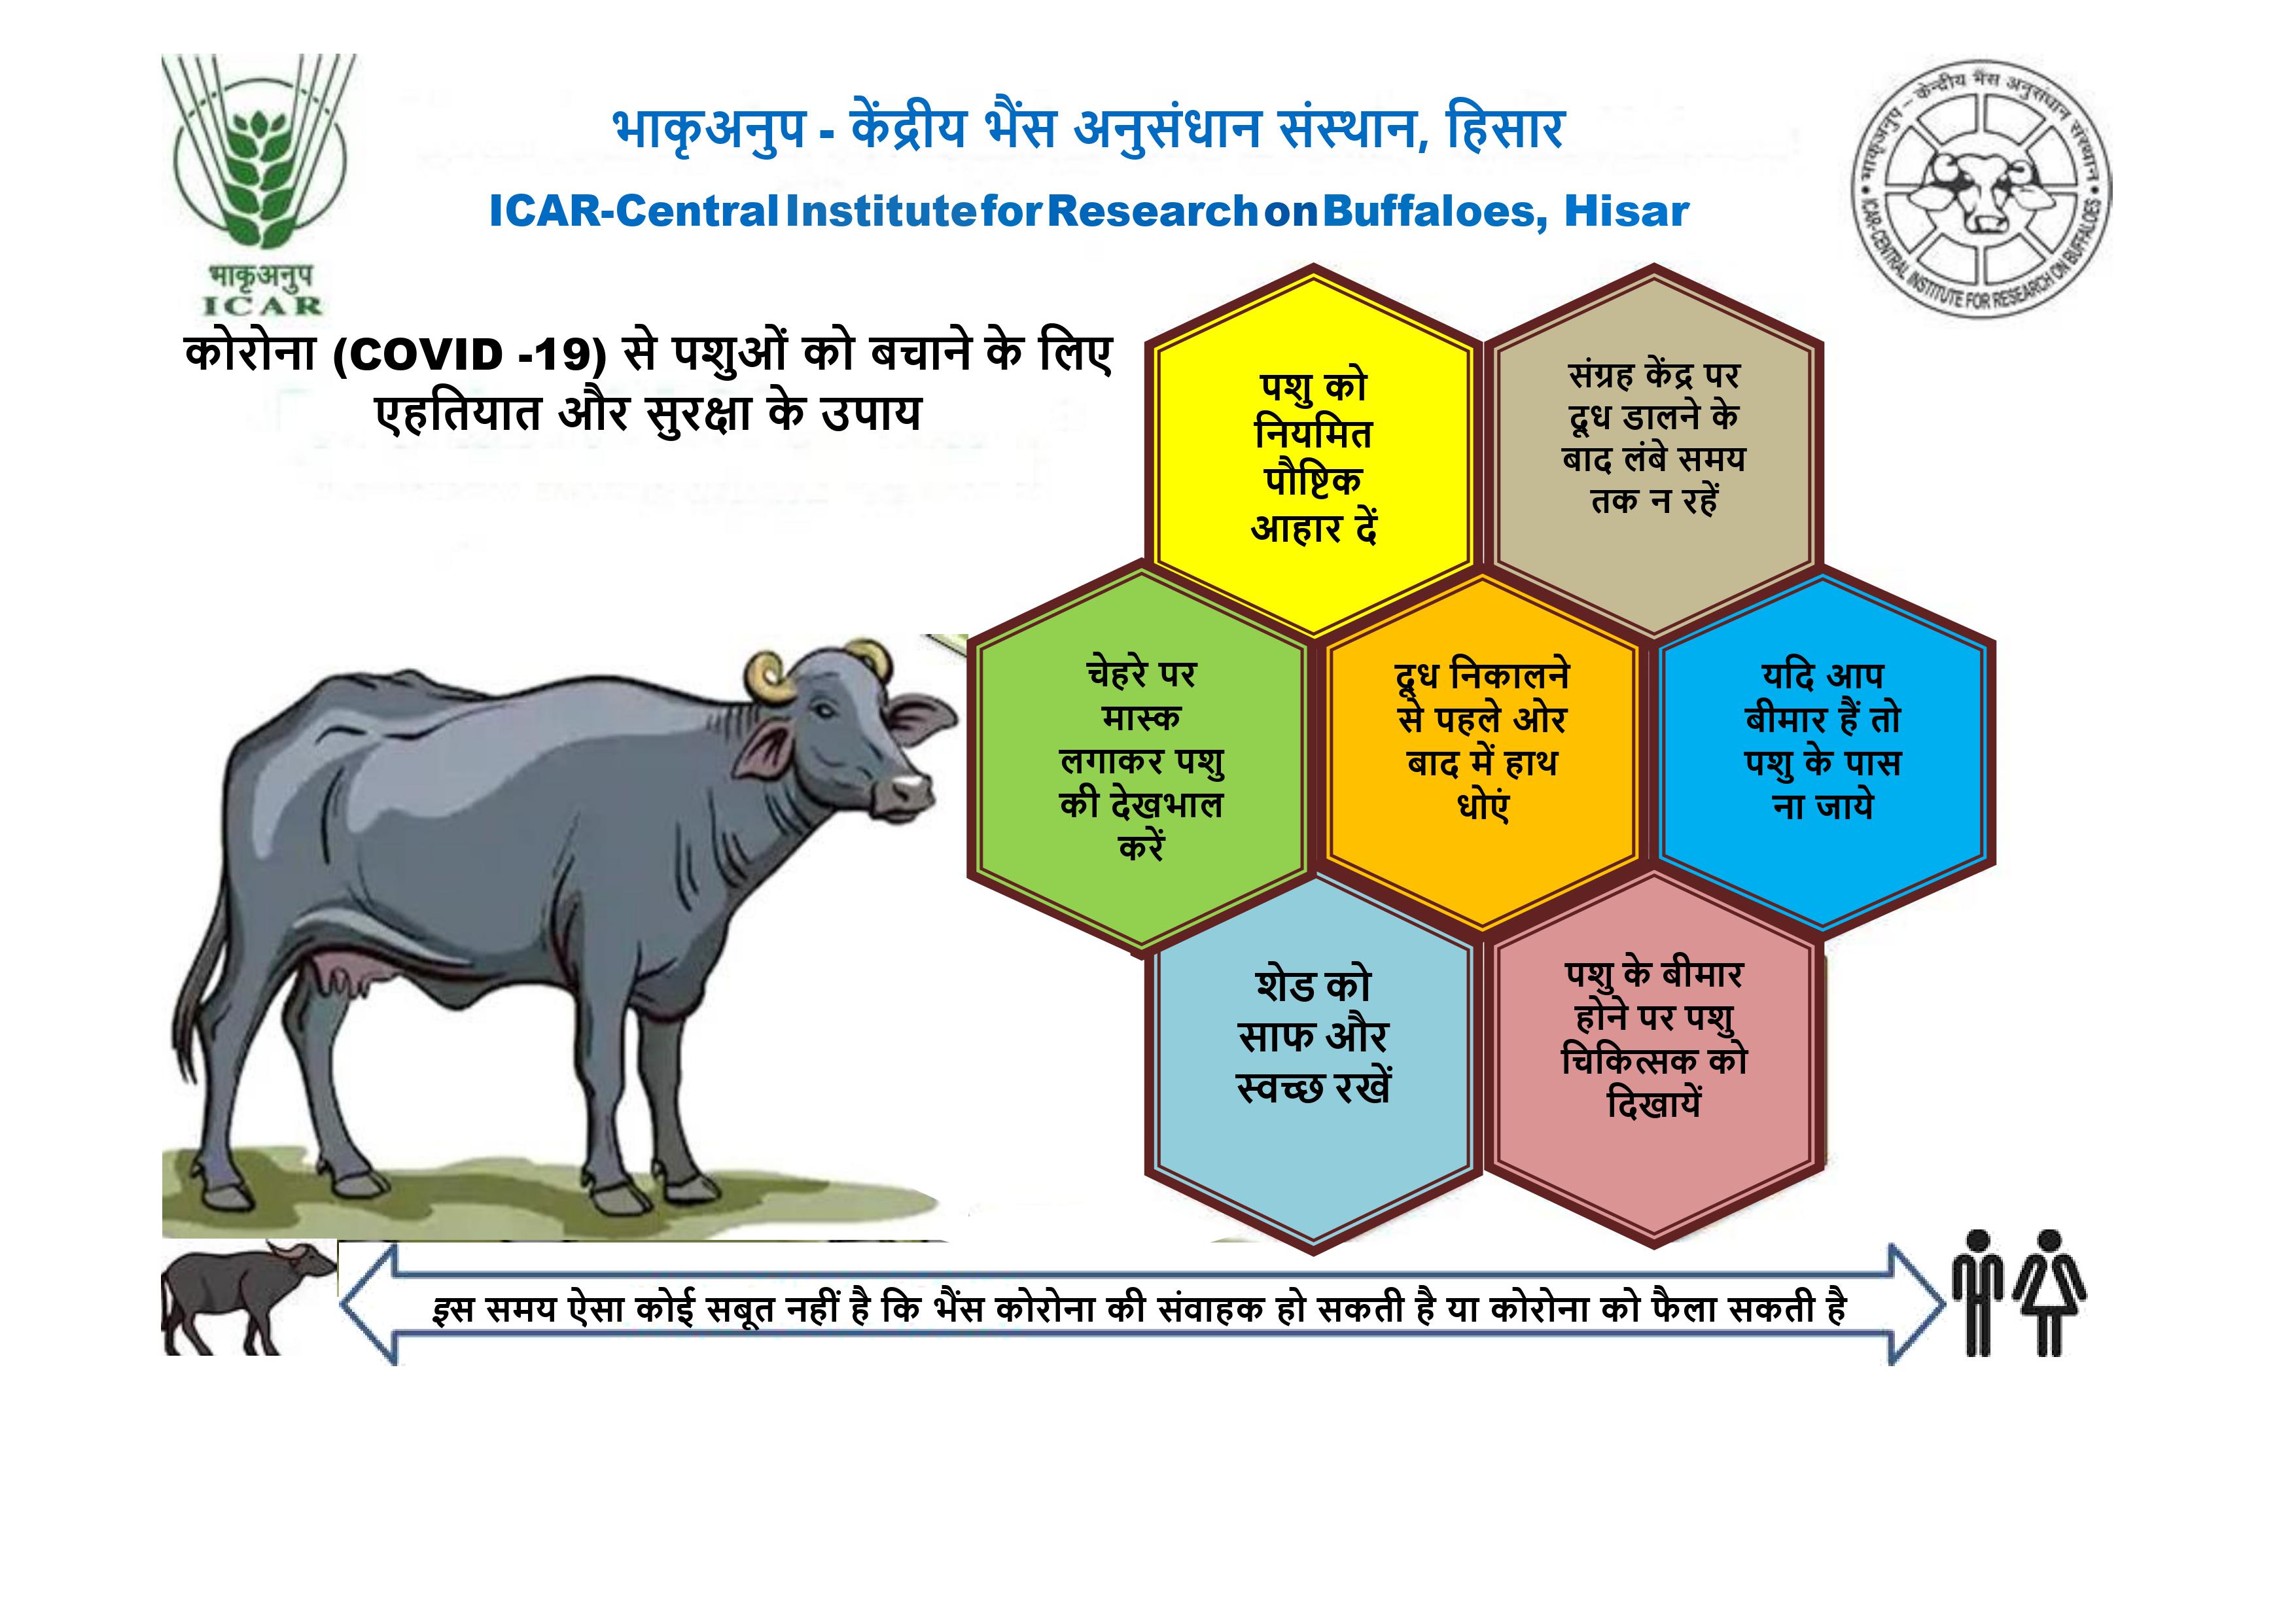 COVID -19 पर केंद्रीय भैंस अनुसंधान संस्थान द्वारा किसानो के लिए सलाह और सुझाव